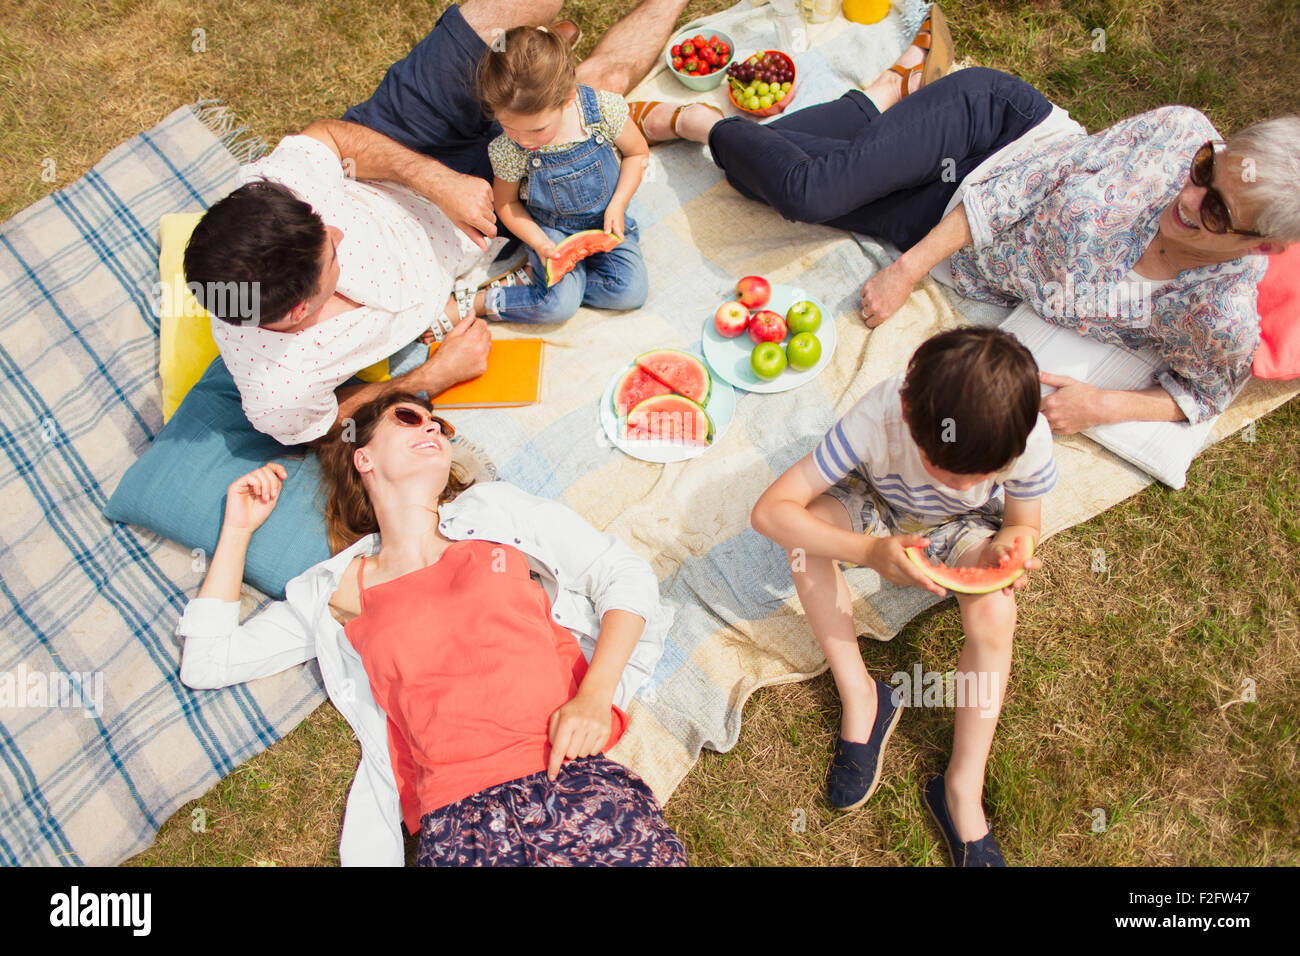 Vue aérienne multi-generation family enjoying pique-nique d'été Banque D'Images